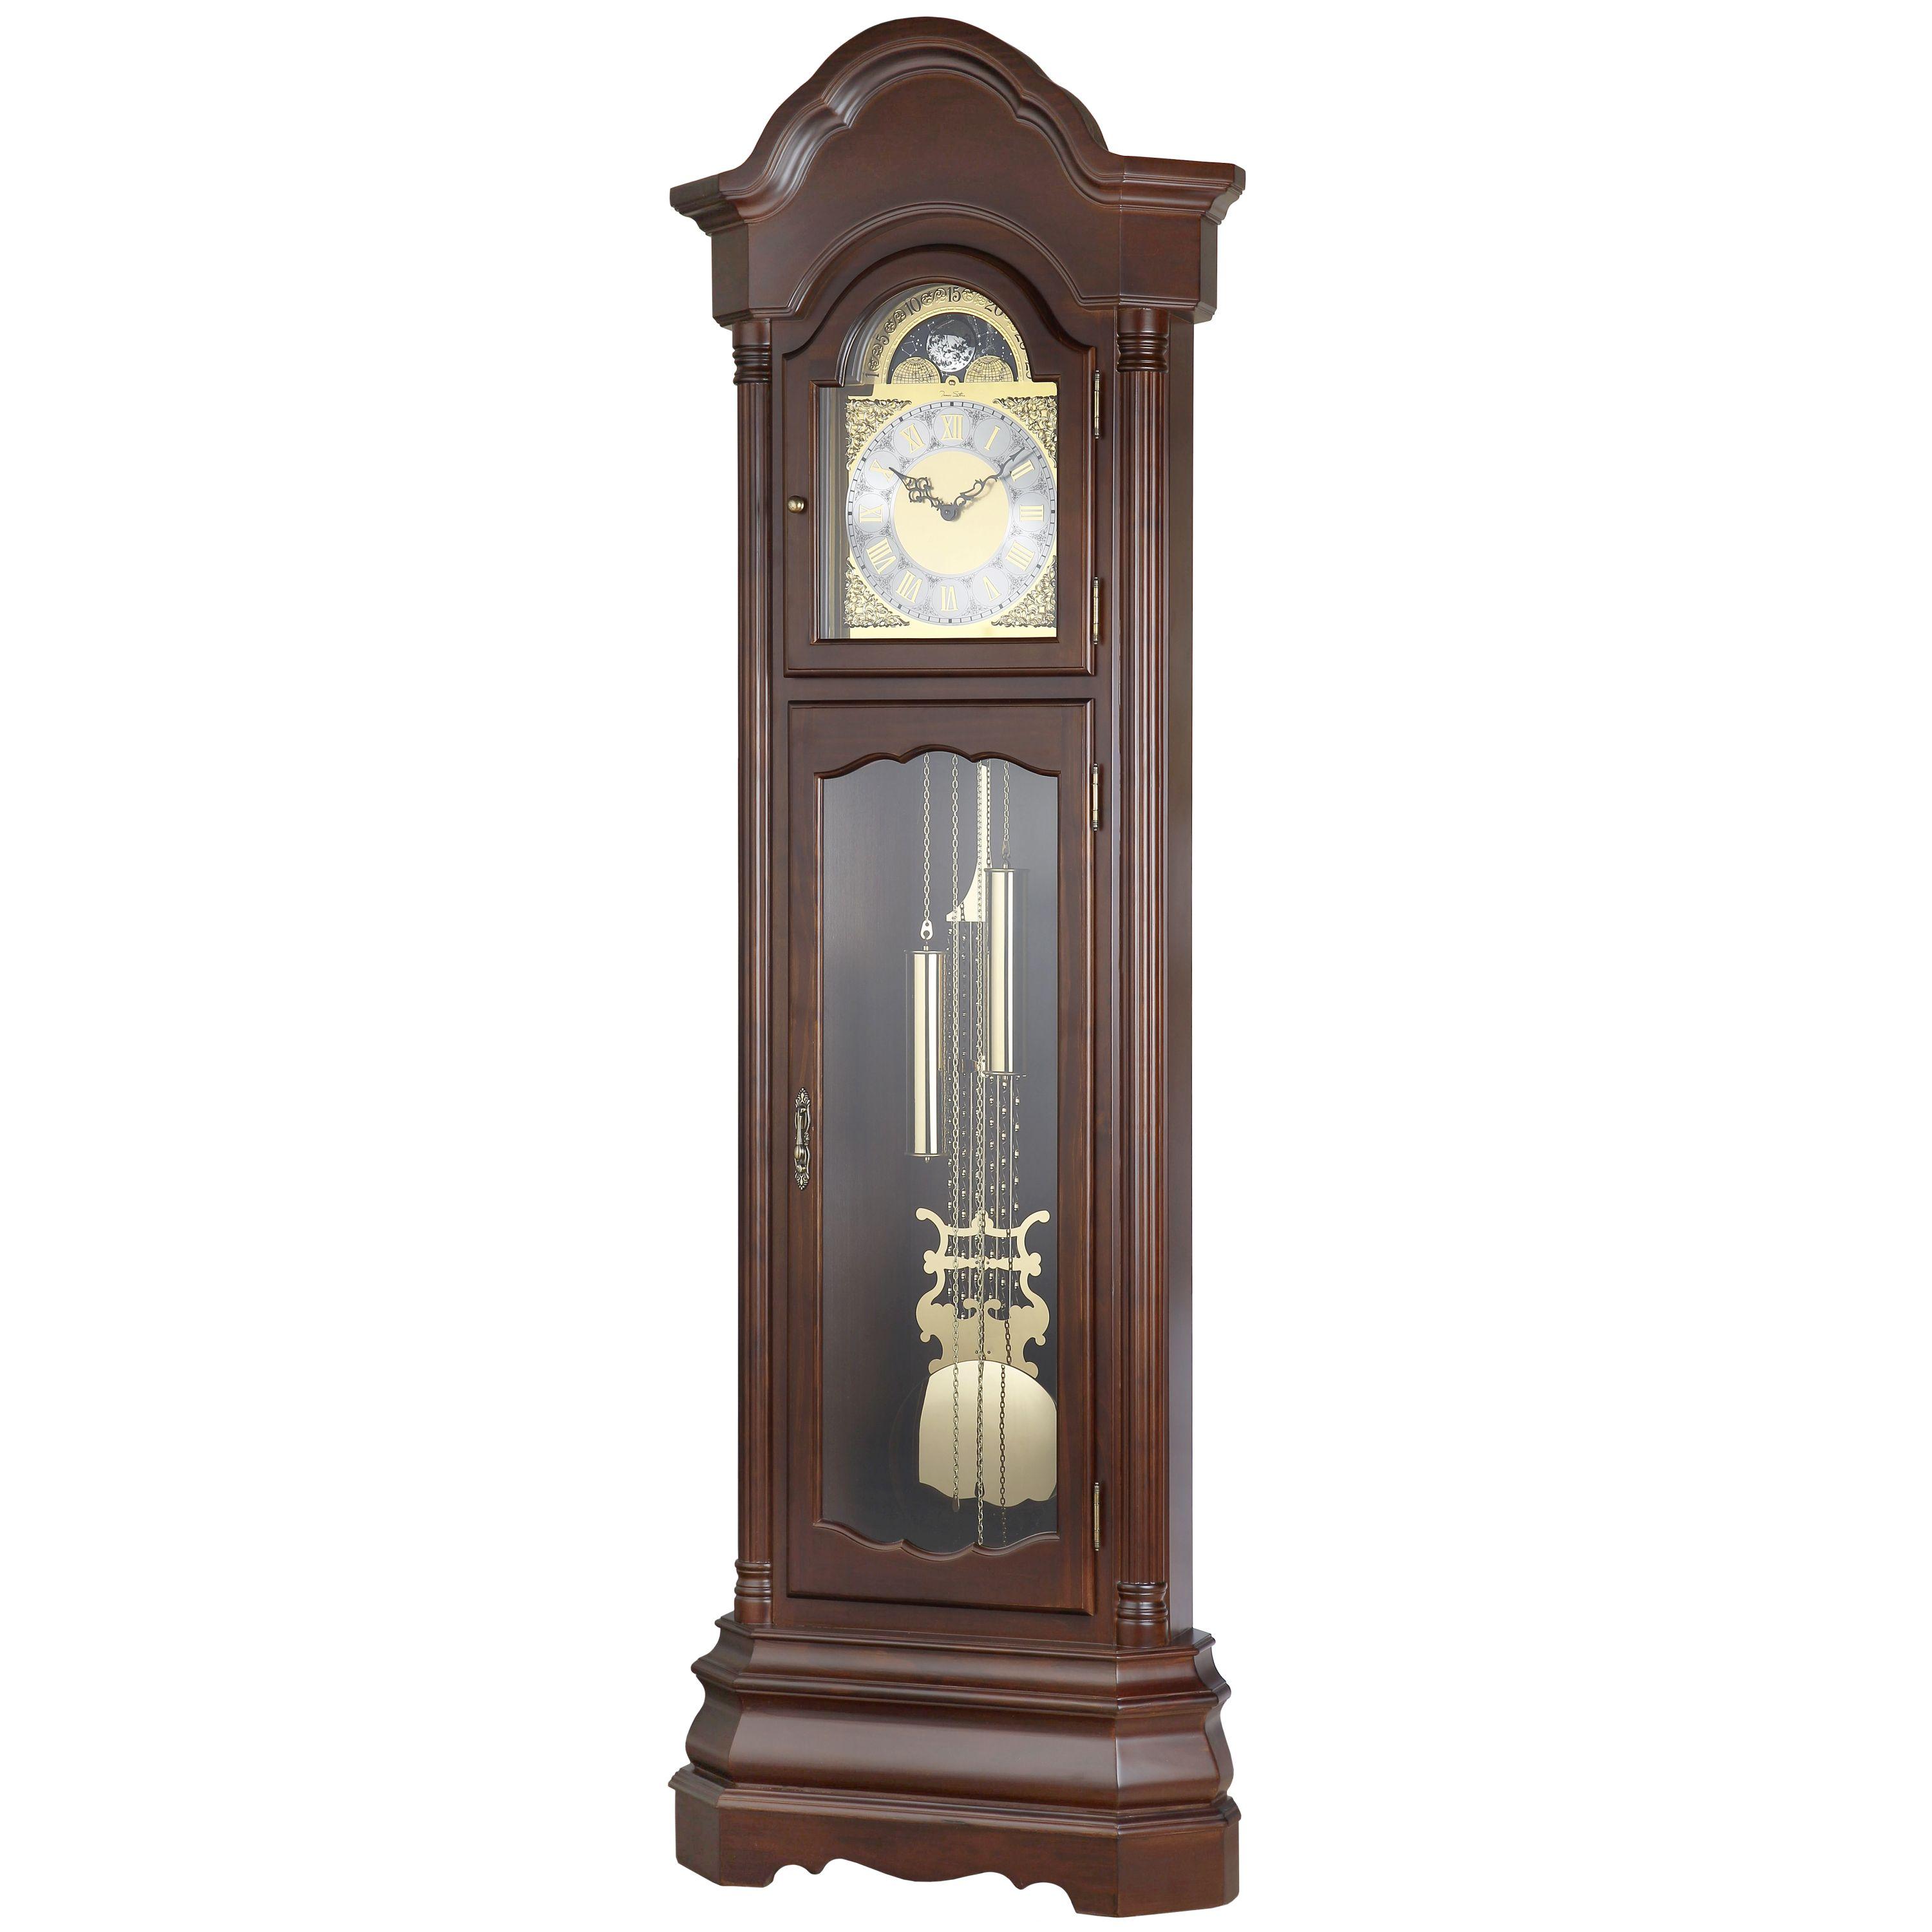 Напольные часы с маятником в деревянном корпусе. Напольные часы Aviere 01034n. Часы Ховард Миллер напольные. Напольные часы Aviere 01067n.